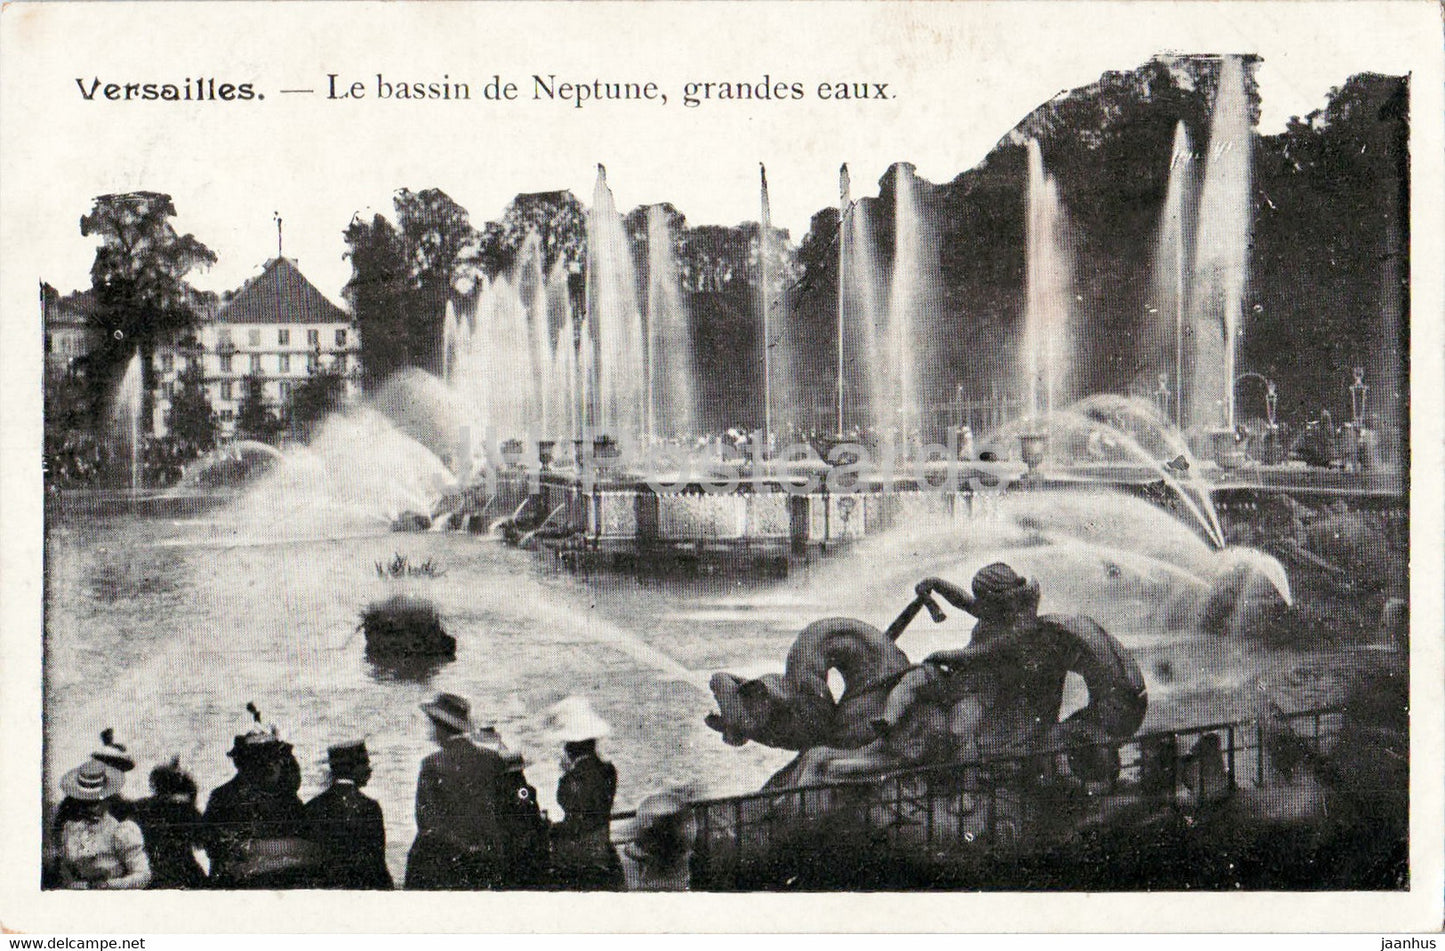 Versailles - Le Bassin de Neptune grandes eaux - old postcard - France - unused - JH Postcards